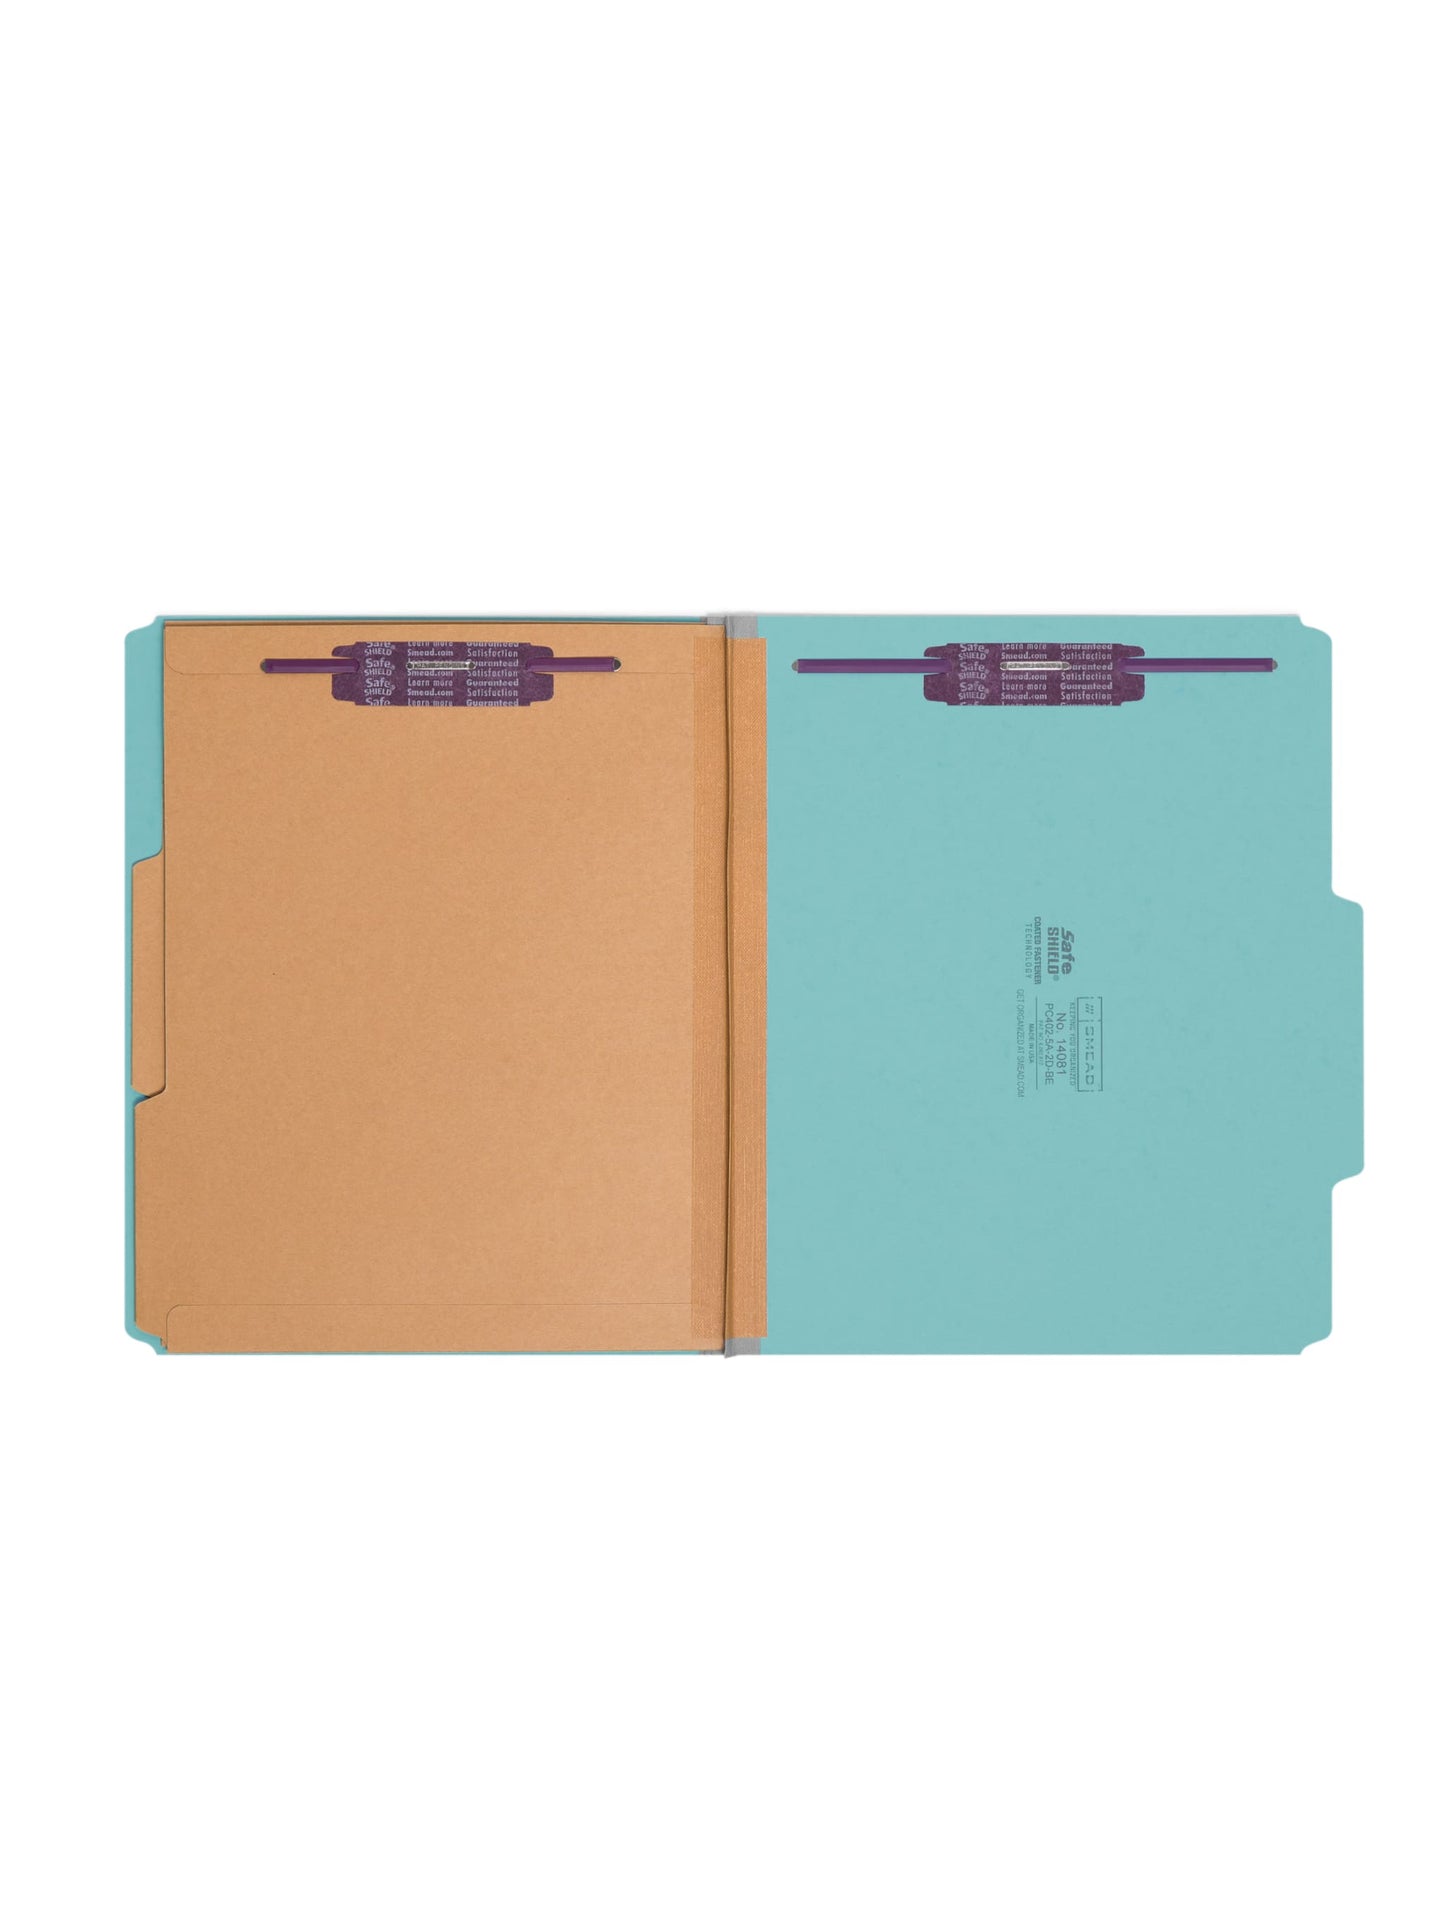 SafeSHIELD® Pressboard Classification File Folders with Pocket Dividers, Blue Color, Letter Size, Set of 0, 30086486140813